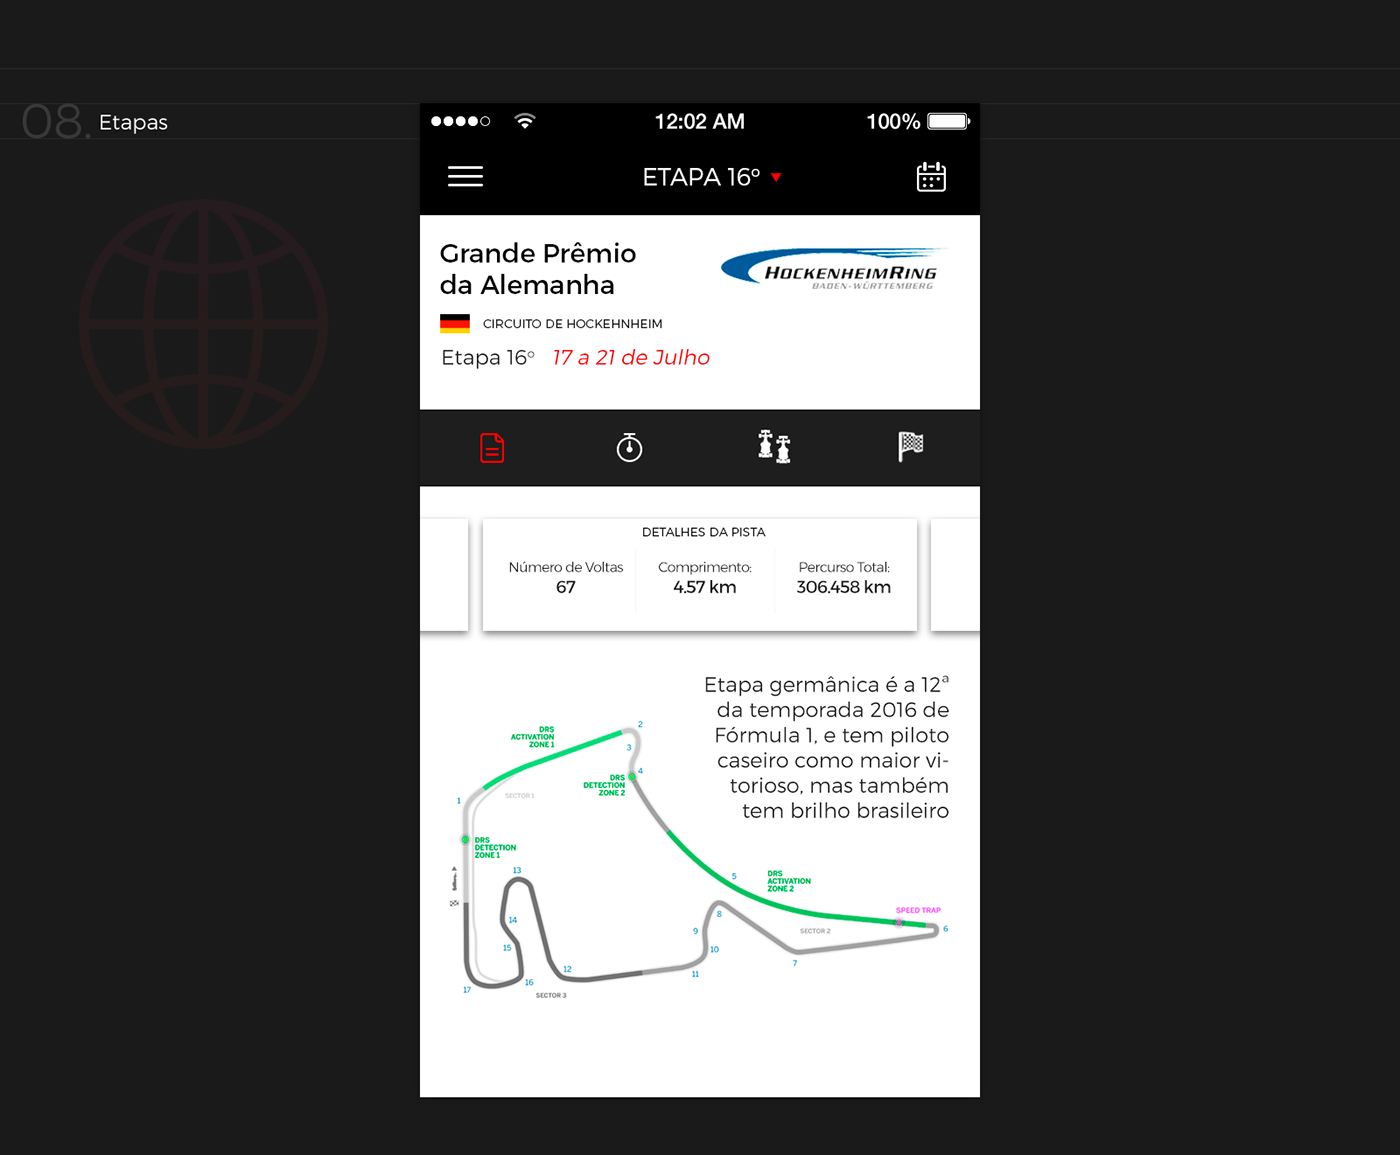 f1 Globo globo.com Formula 1 formula one Racing f1 app app concept